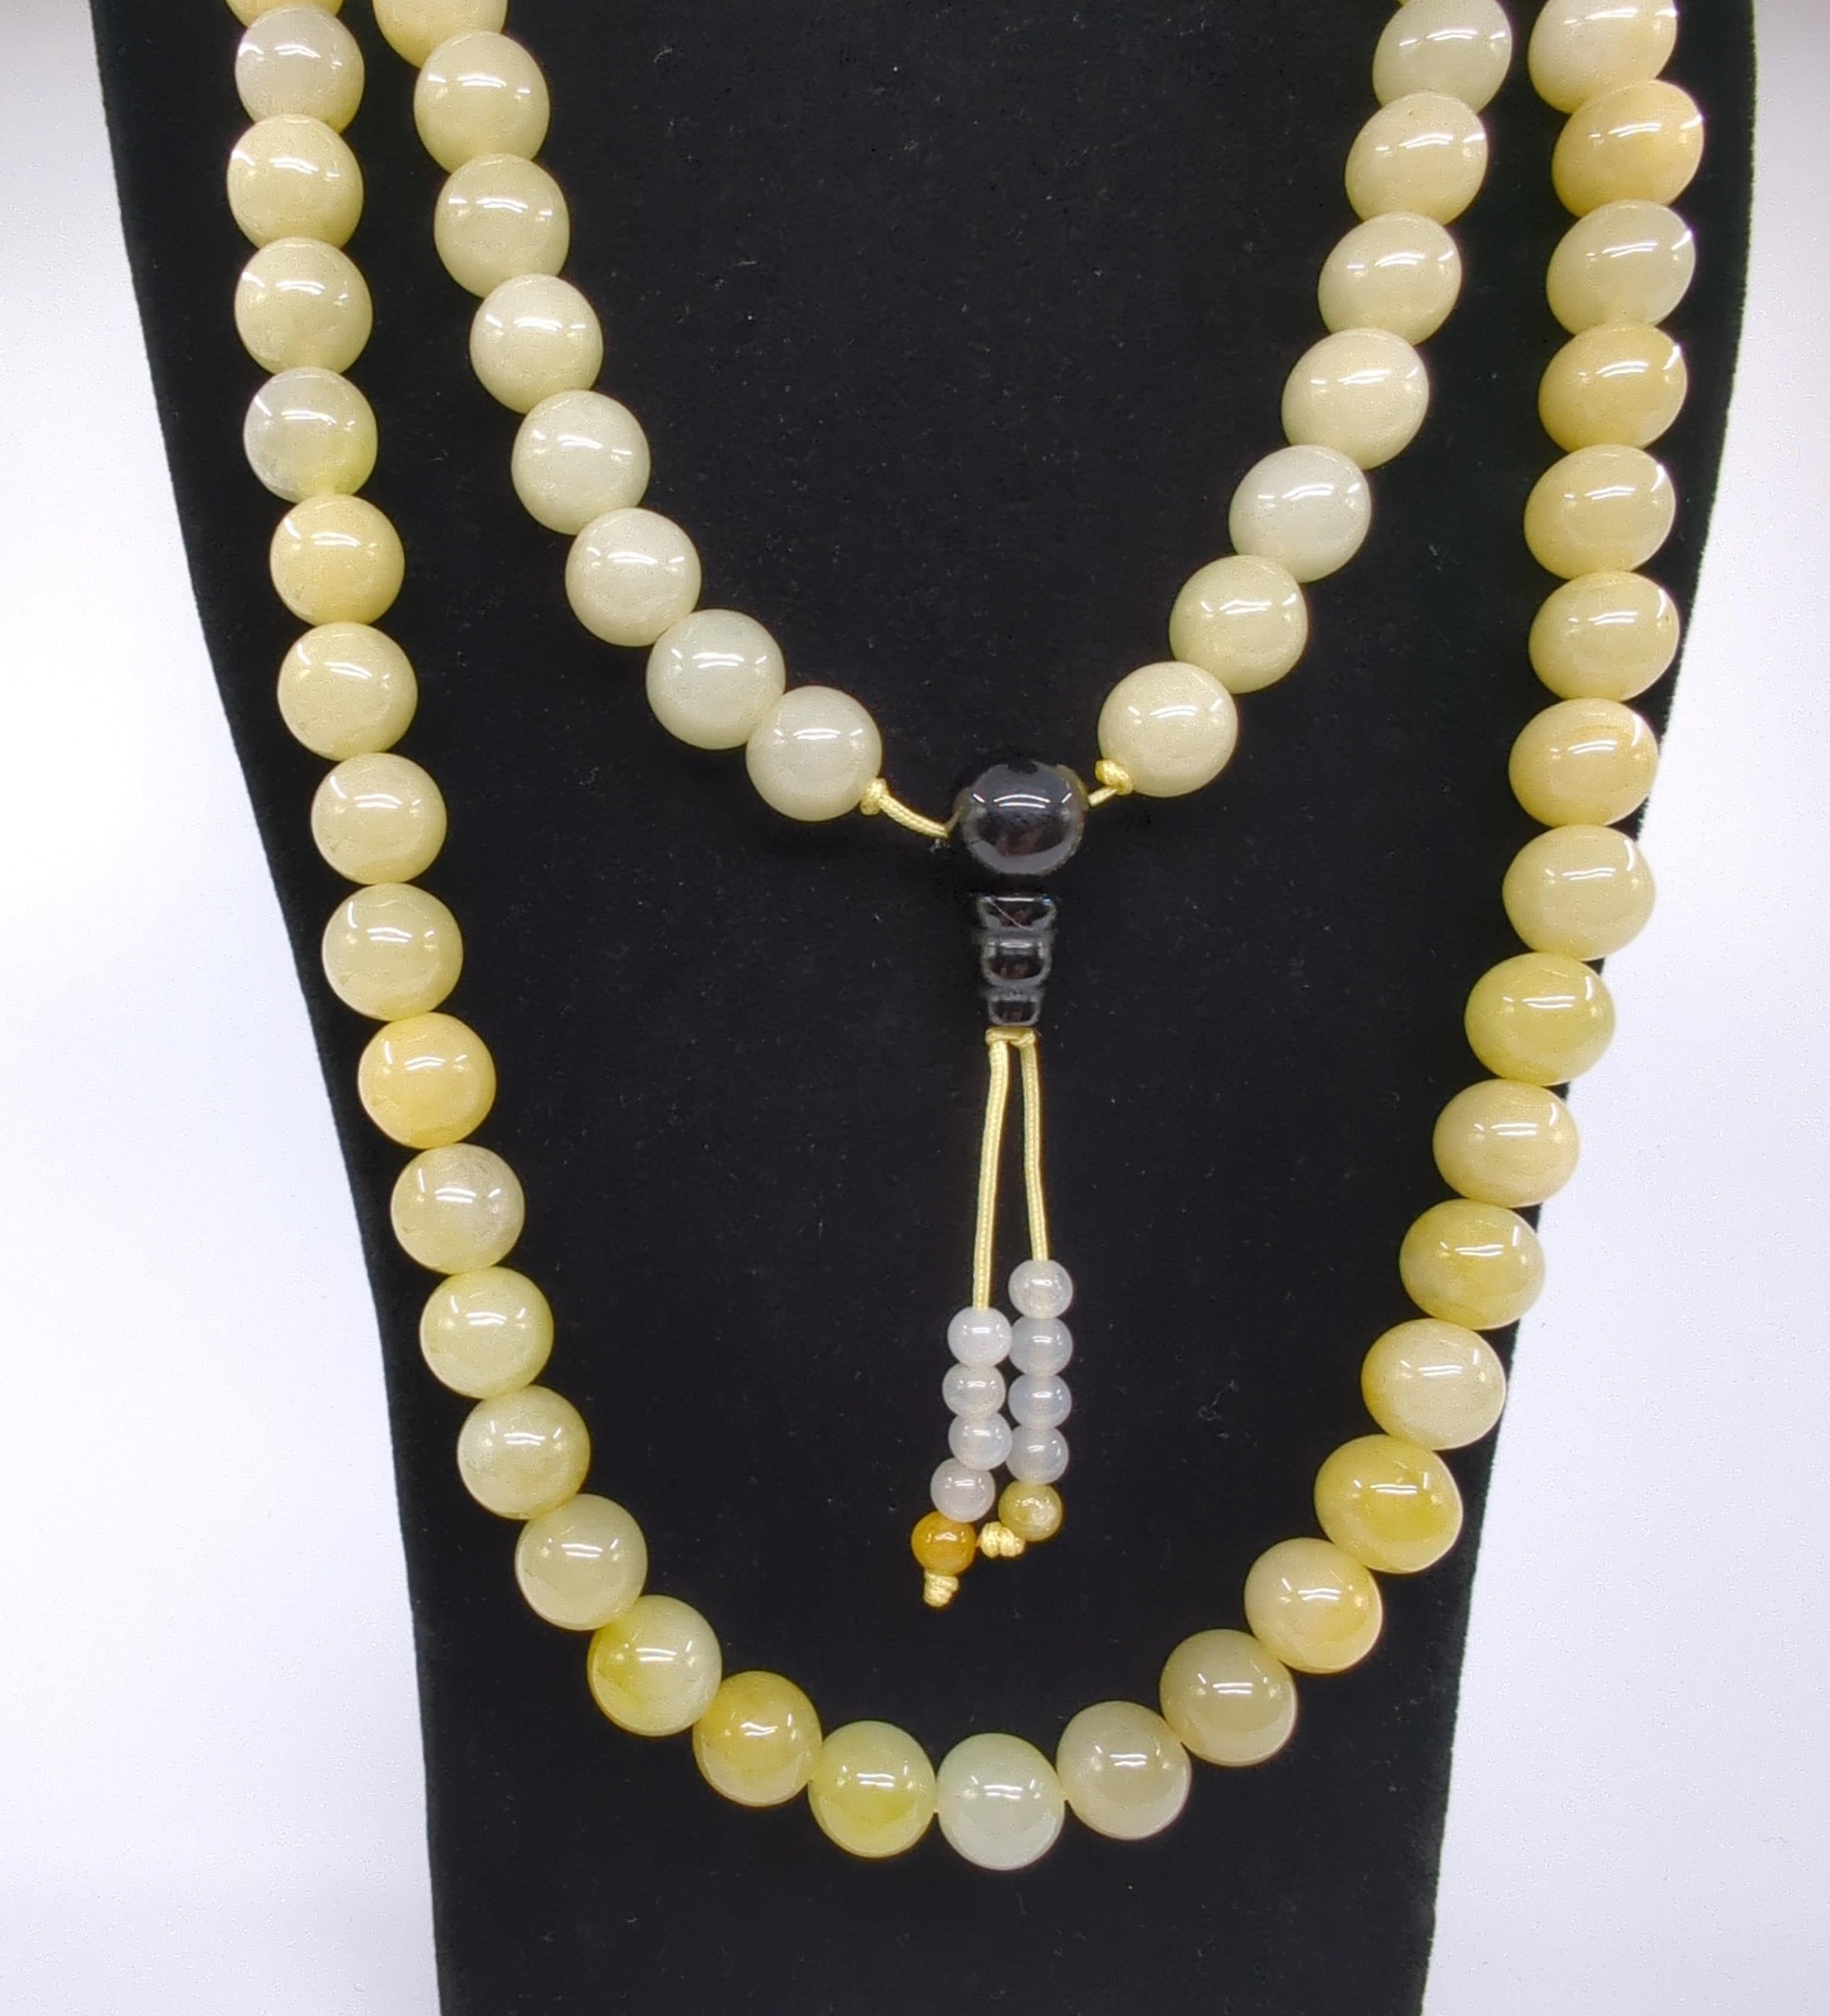 Ce magnifique collier de perles de prière chinoises est un exemple d'art et de résonance spirituelle. Il comprend 108 perles de jadéite de qualité A, chacune d'un diamètre approximatif de 9,5 mm. Les perles sont polies de manière experte pour